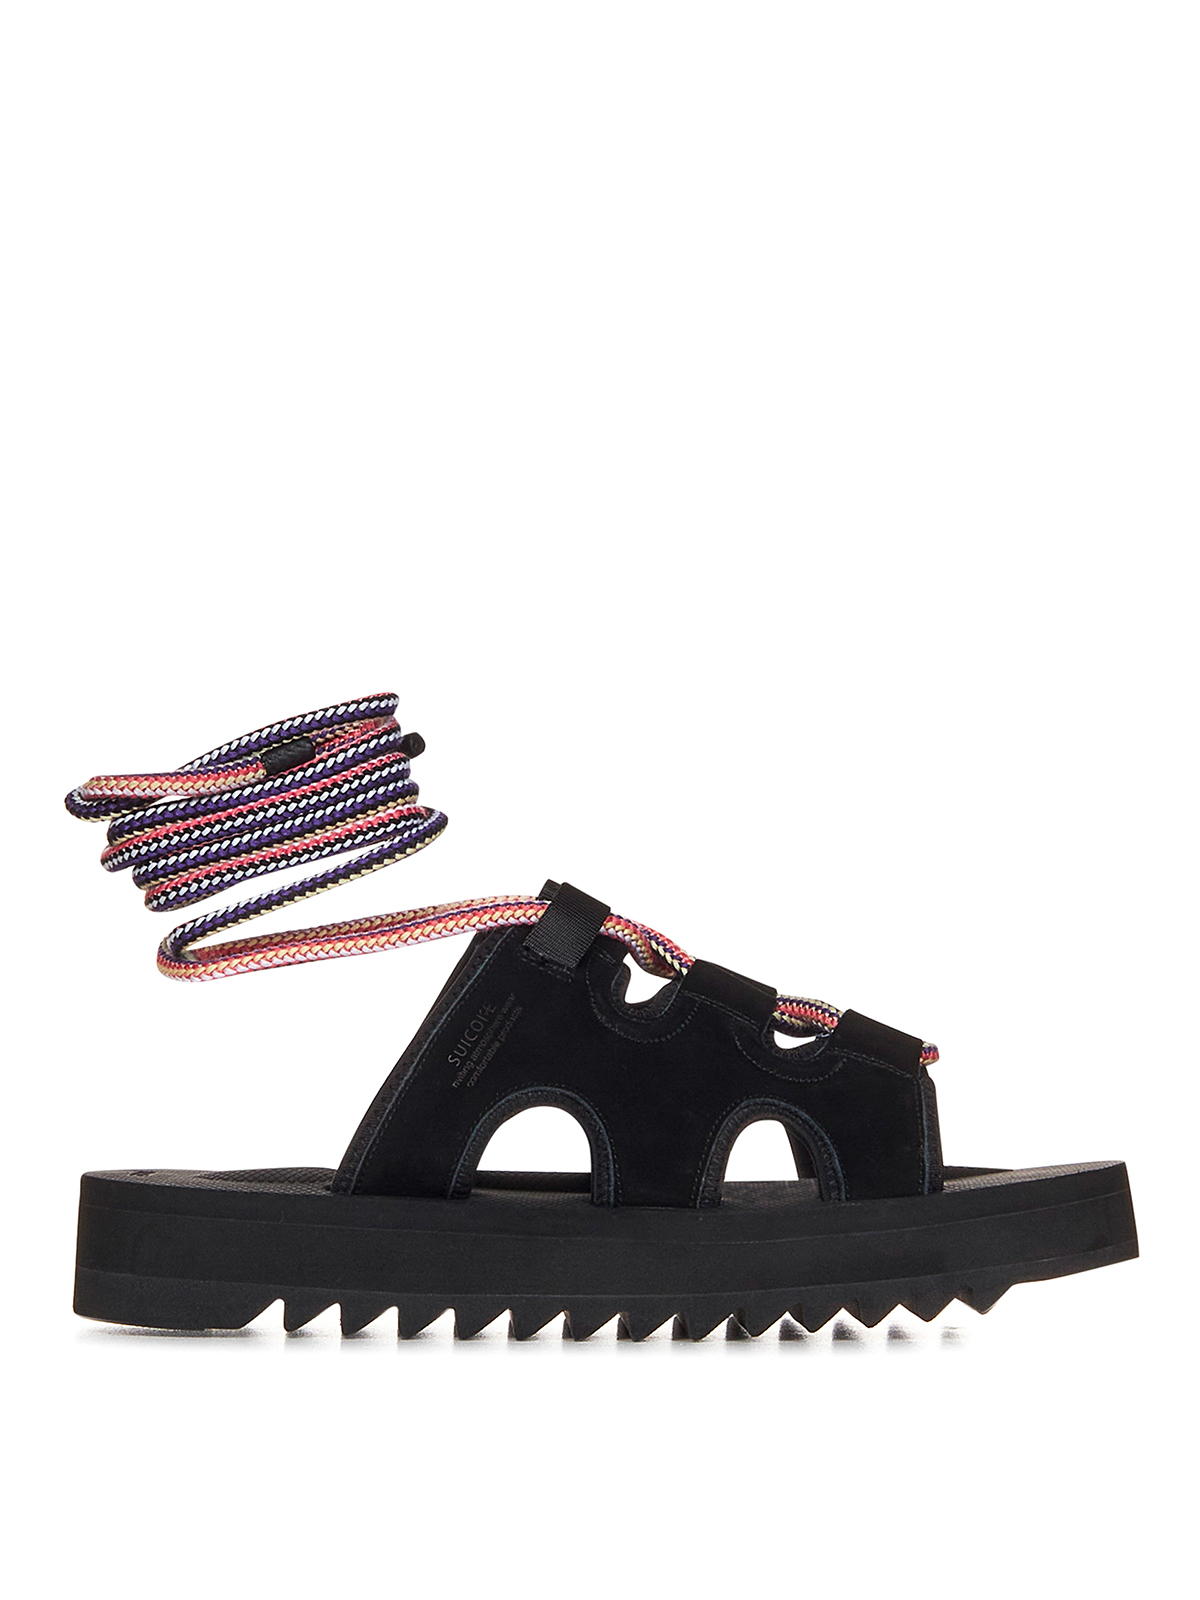 Shop Suicoke Black Suede Sandals